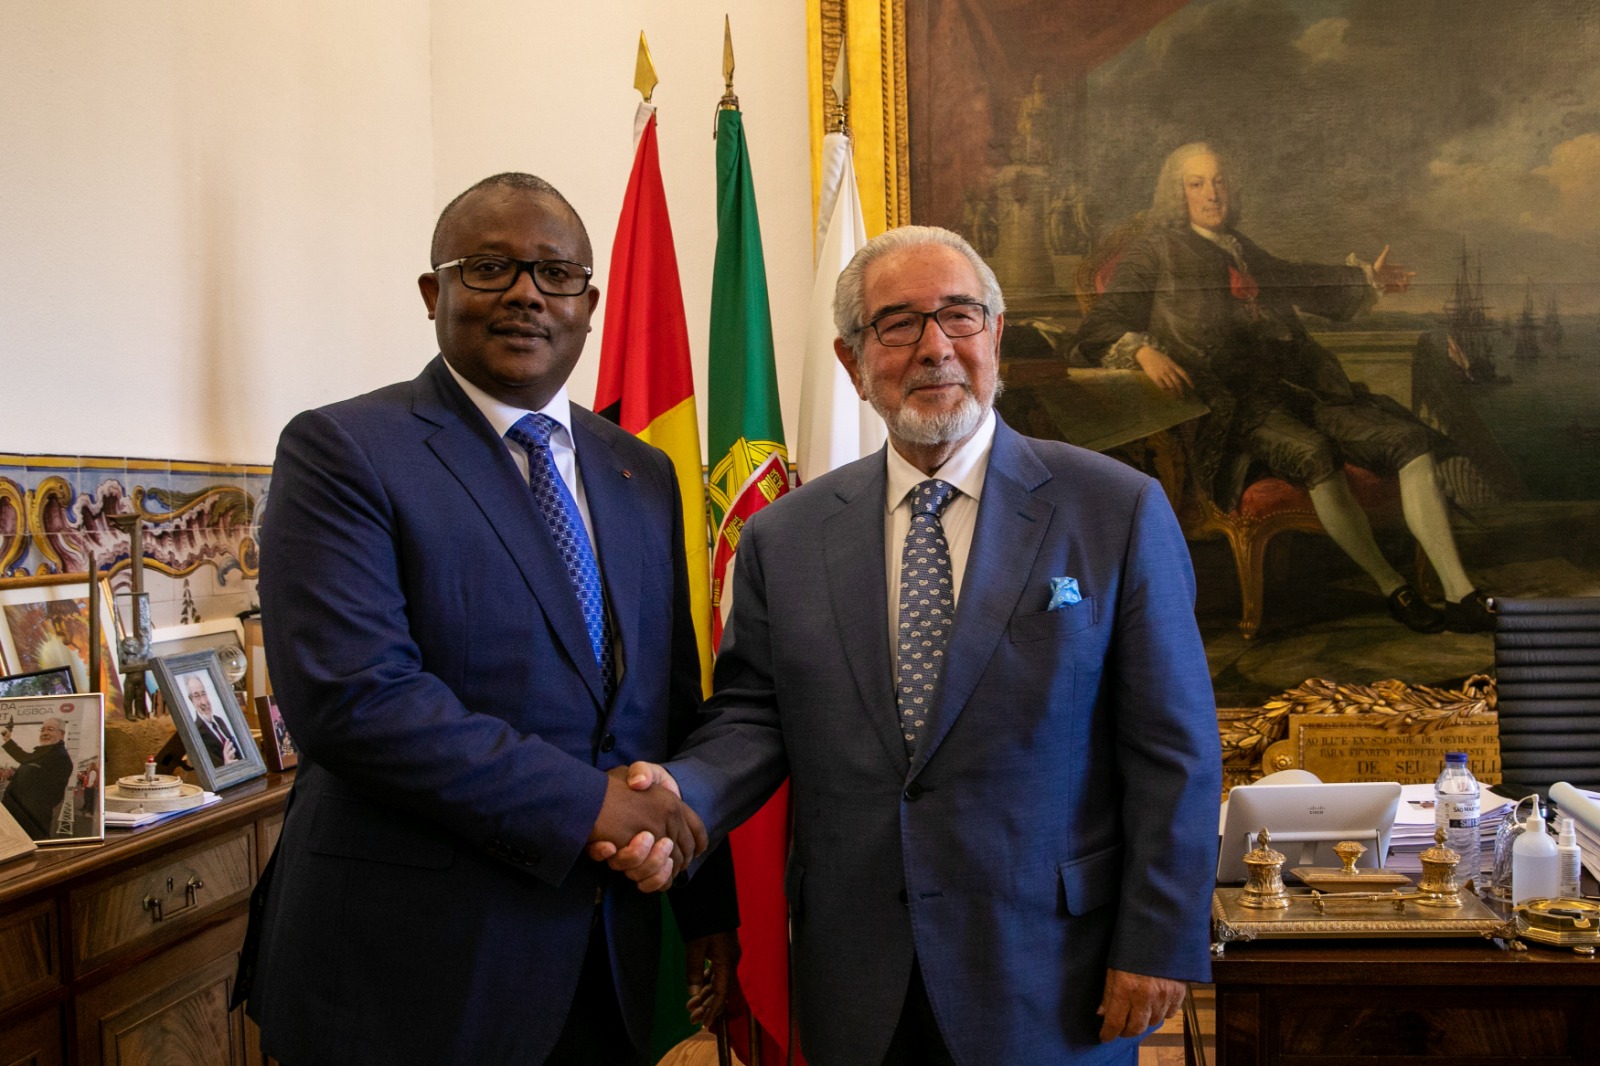 Aperto de mão entre Presidente da Câmara Isaltino Morais e Presidente da República da Guiné-Bissau, Umaro Sissoco Embaló